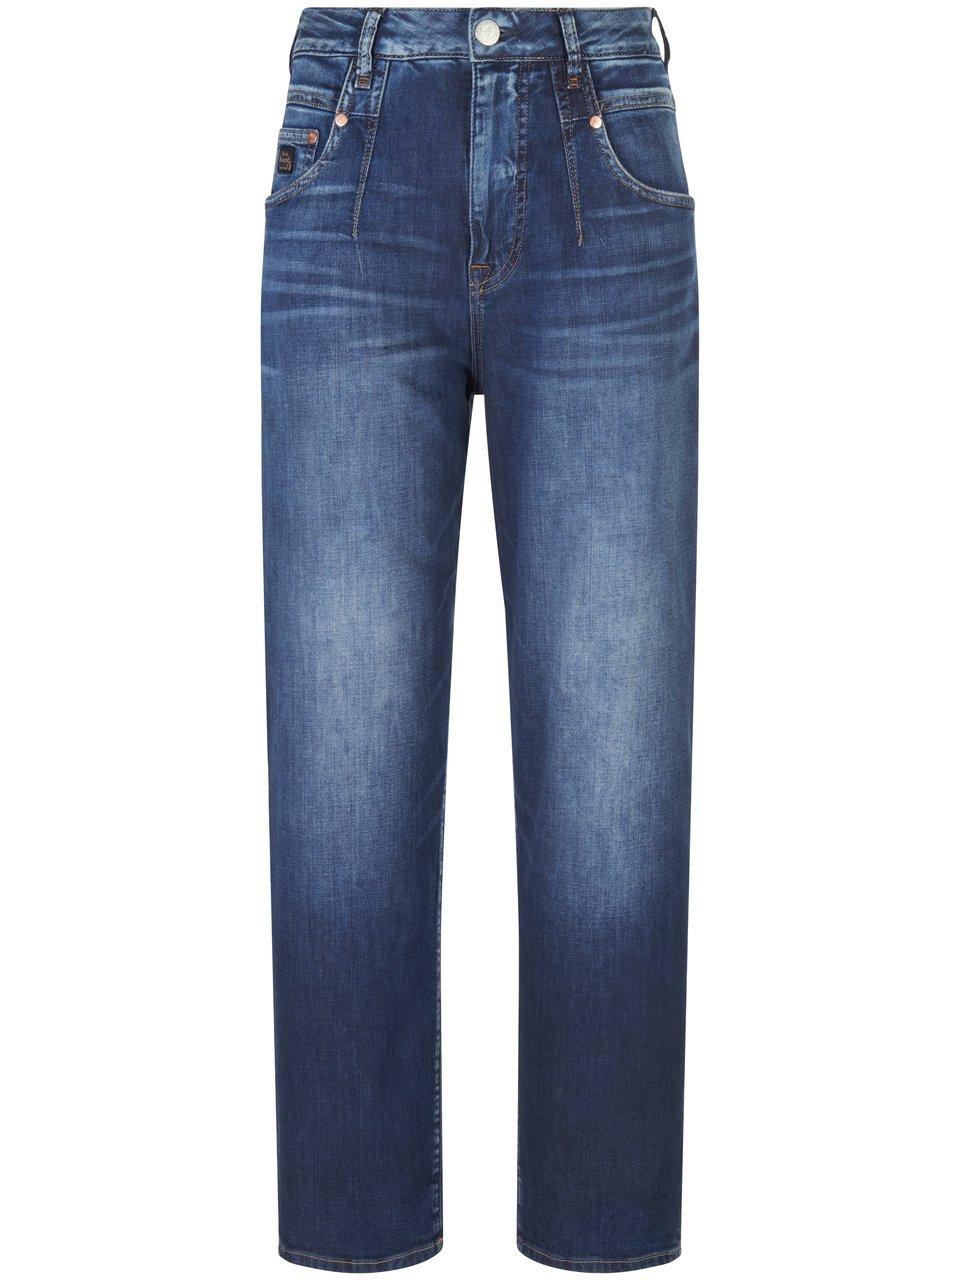 Highwaist-jeans Brooke Van Herrlicher denim